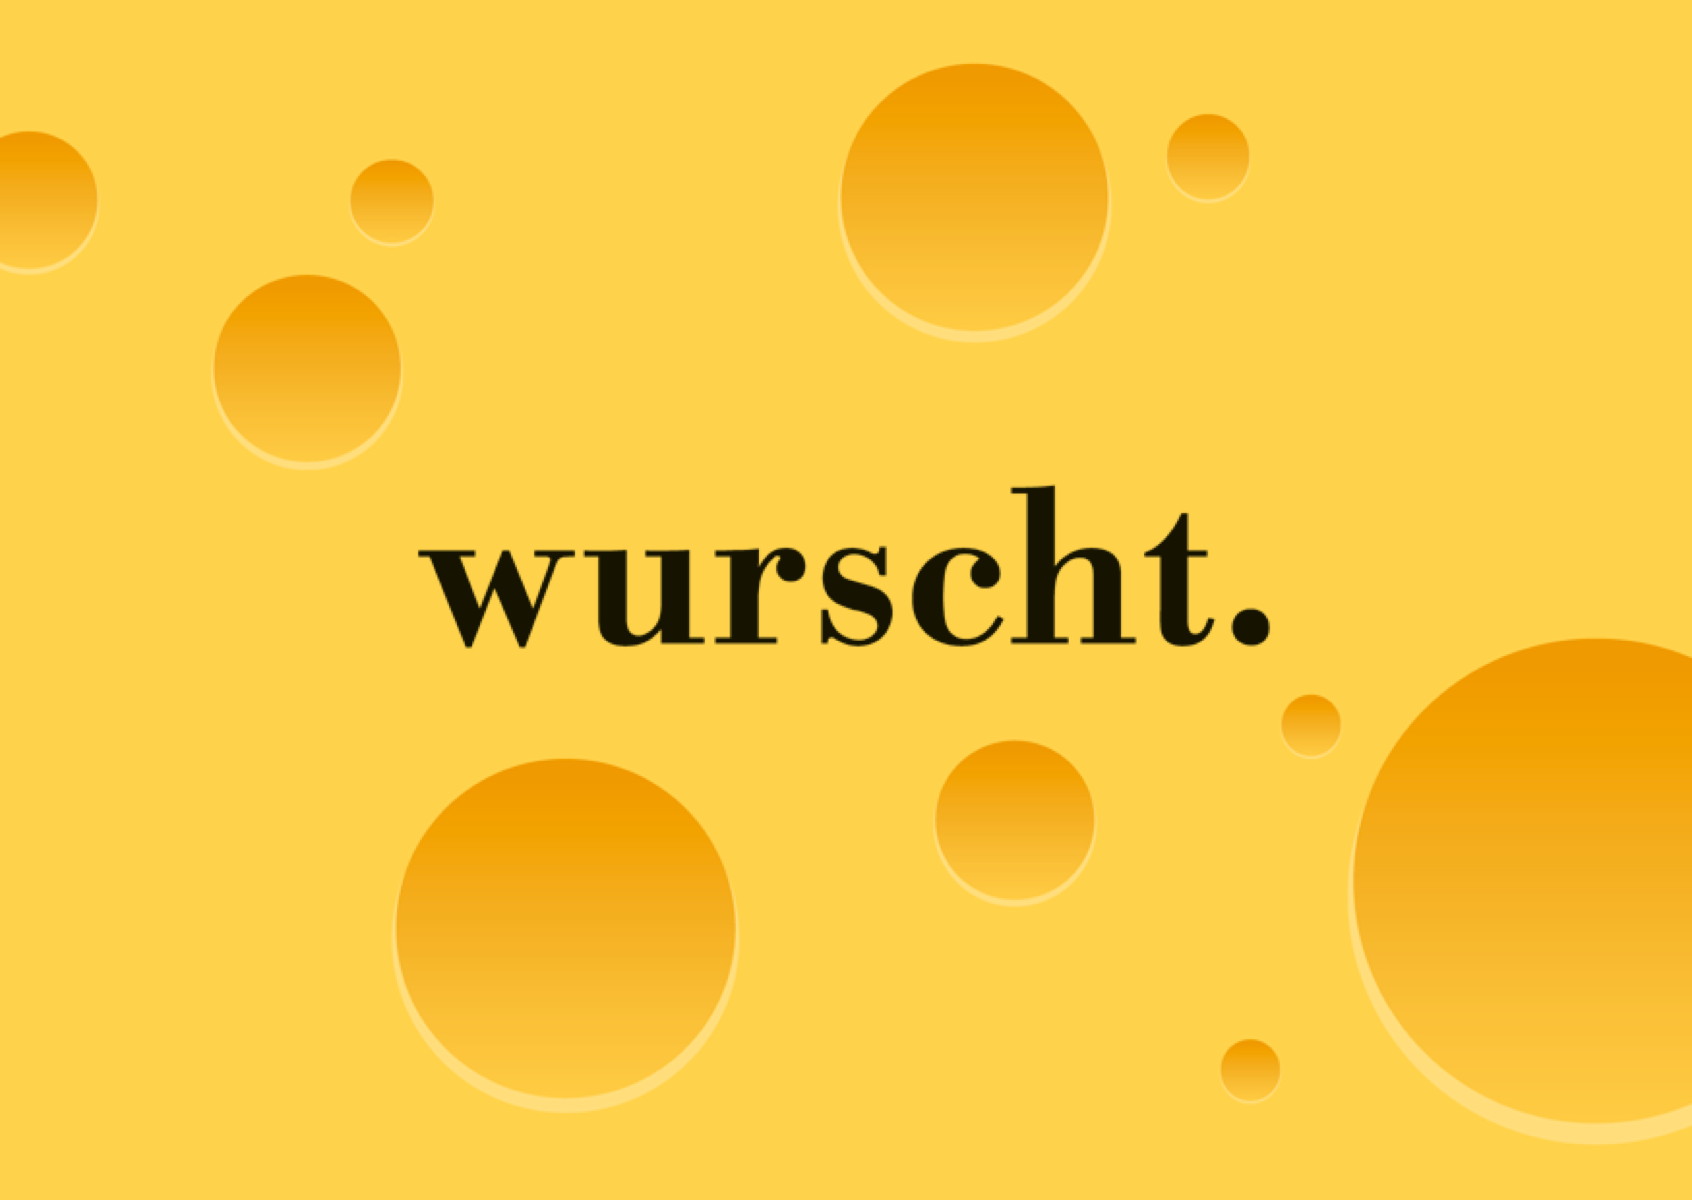 Wurscht